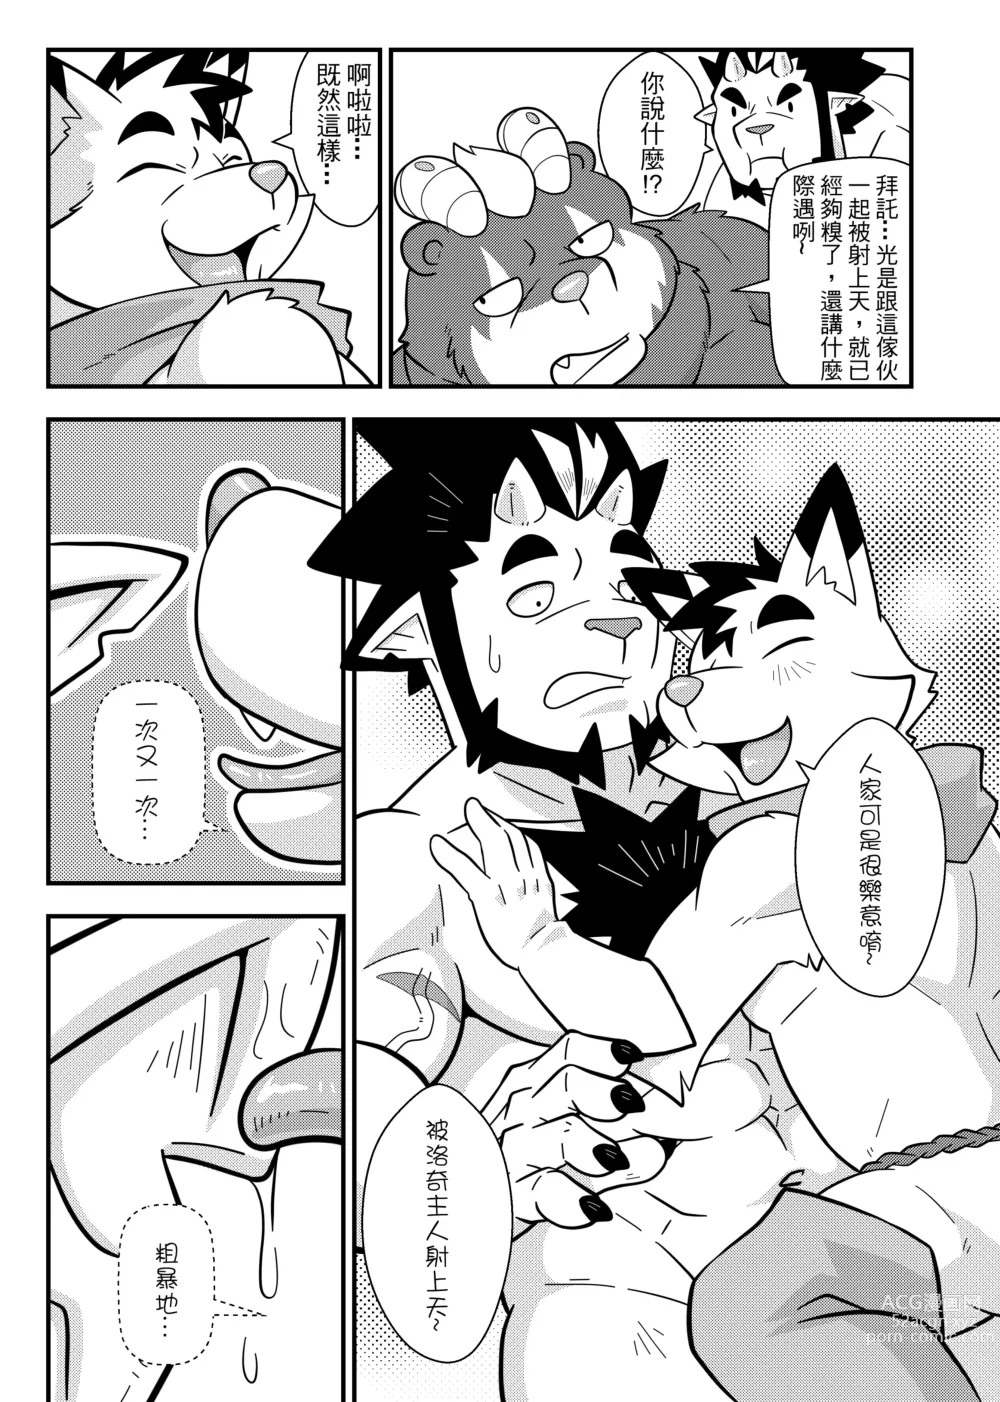 Page 12 of doujinshi 勇者的大小只有魔王塞得下4